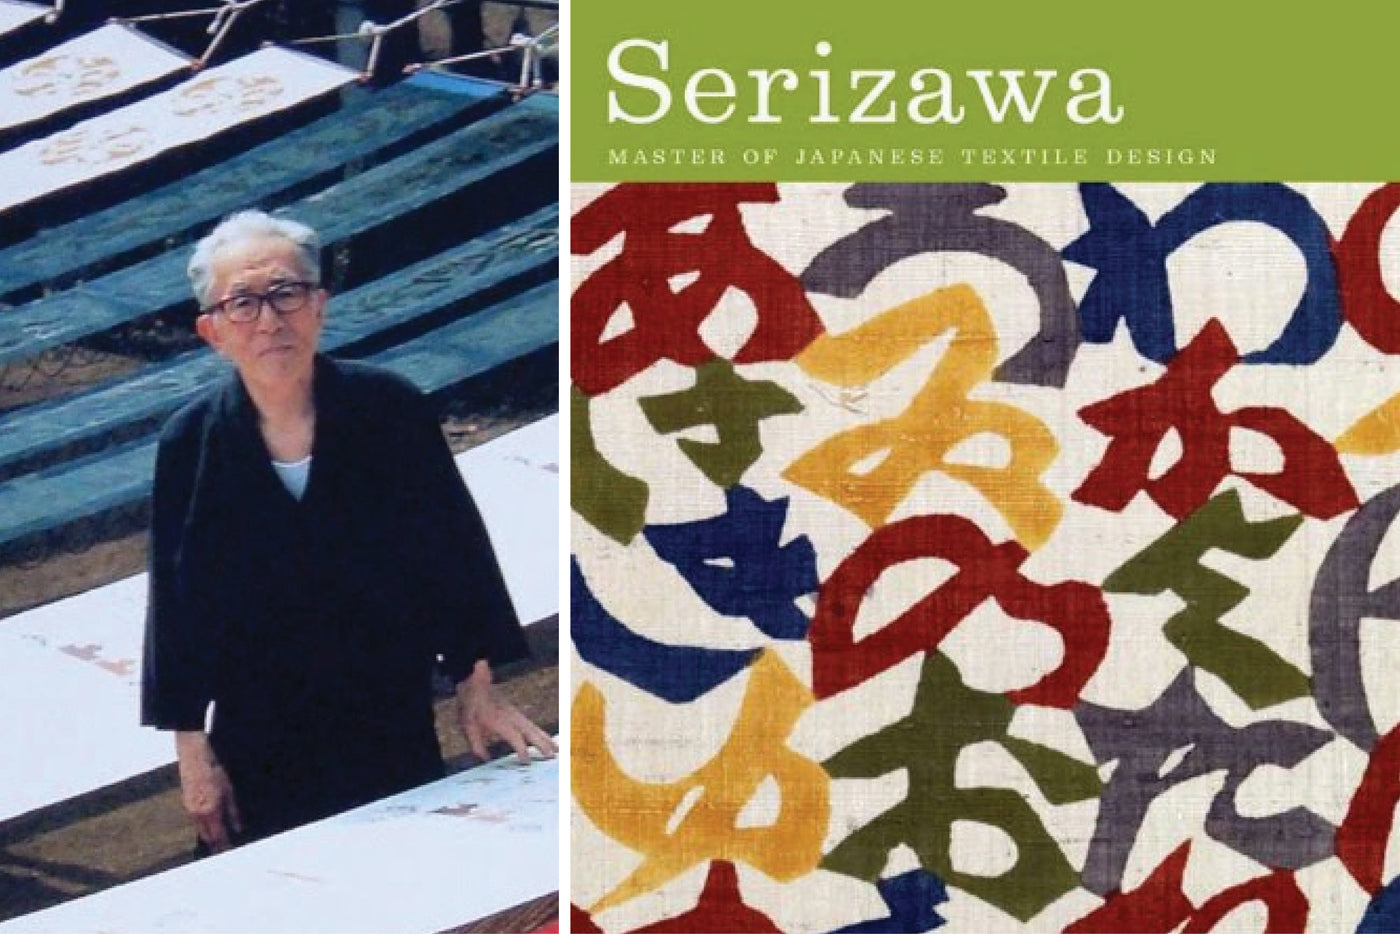 Serizawa, Japanese textile master